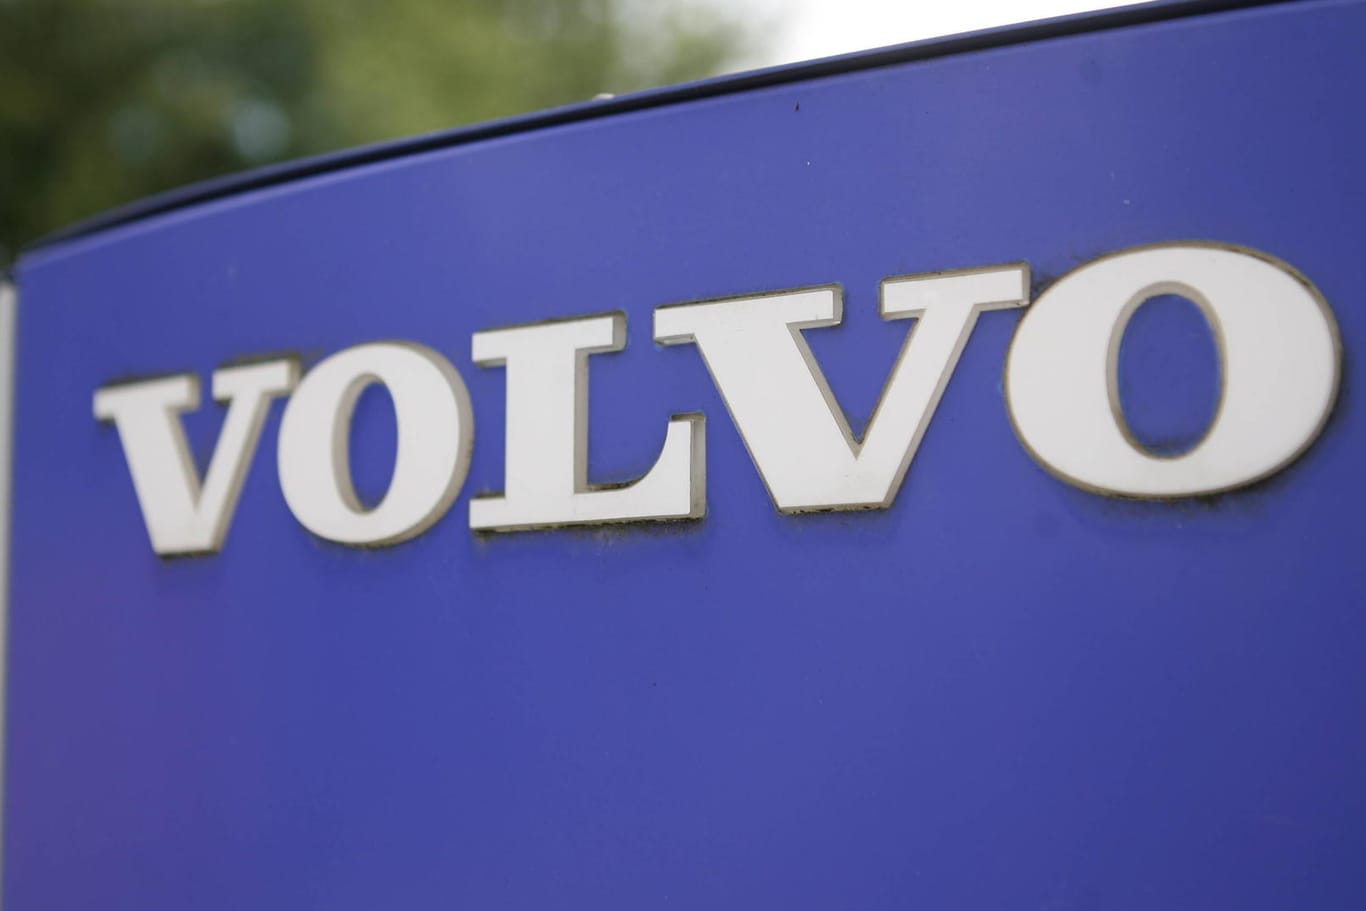 Volvo: Nach einem zufriedenstellenden Gewinn im letzten Jahr, muss der schwedische Autohersteller aktuell Minuszahlen hinnehmen.